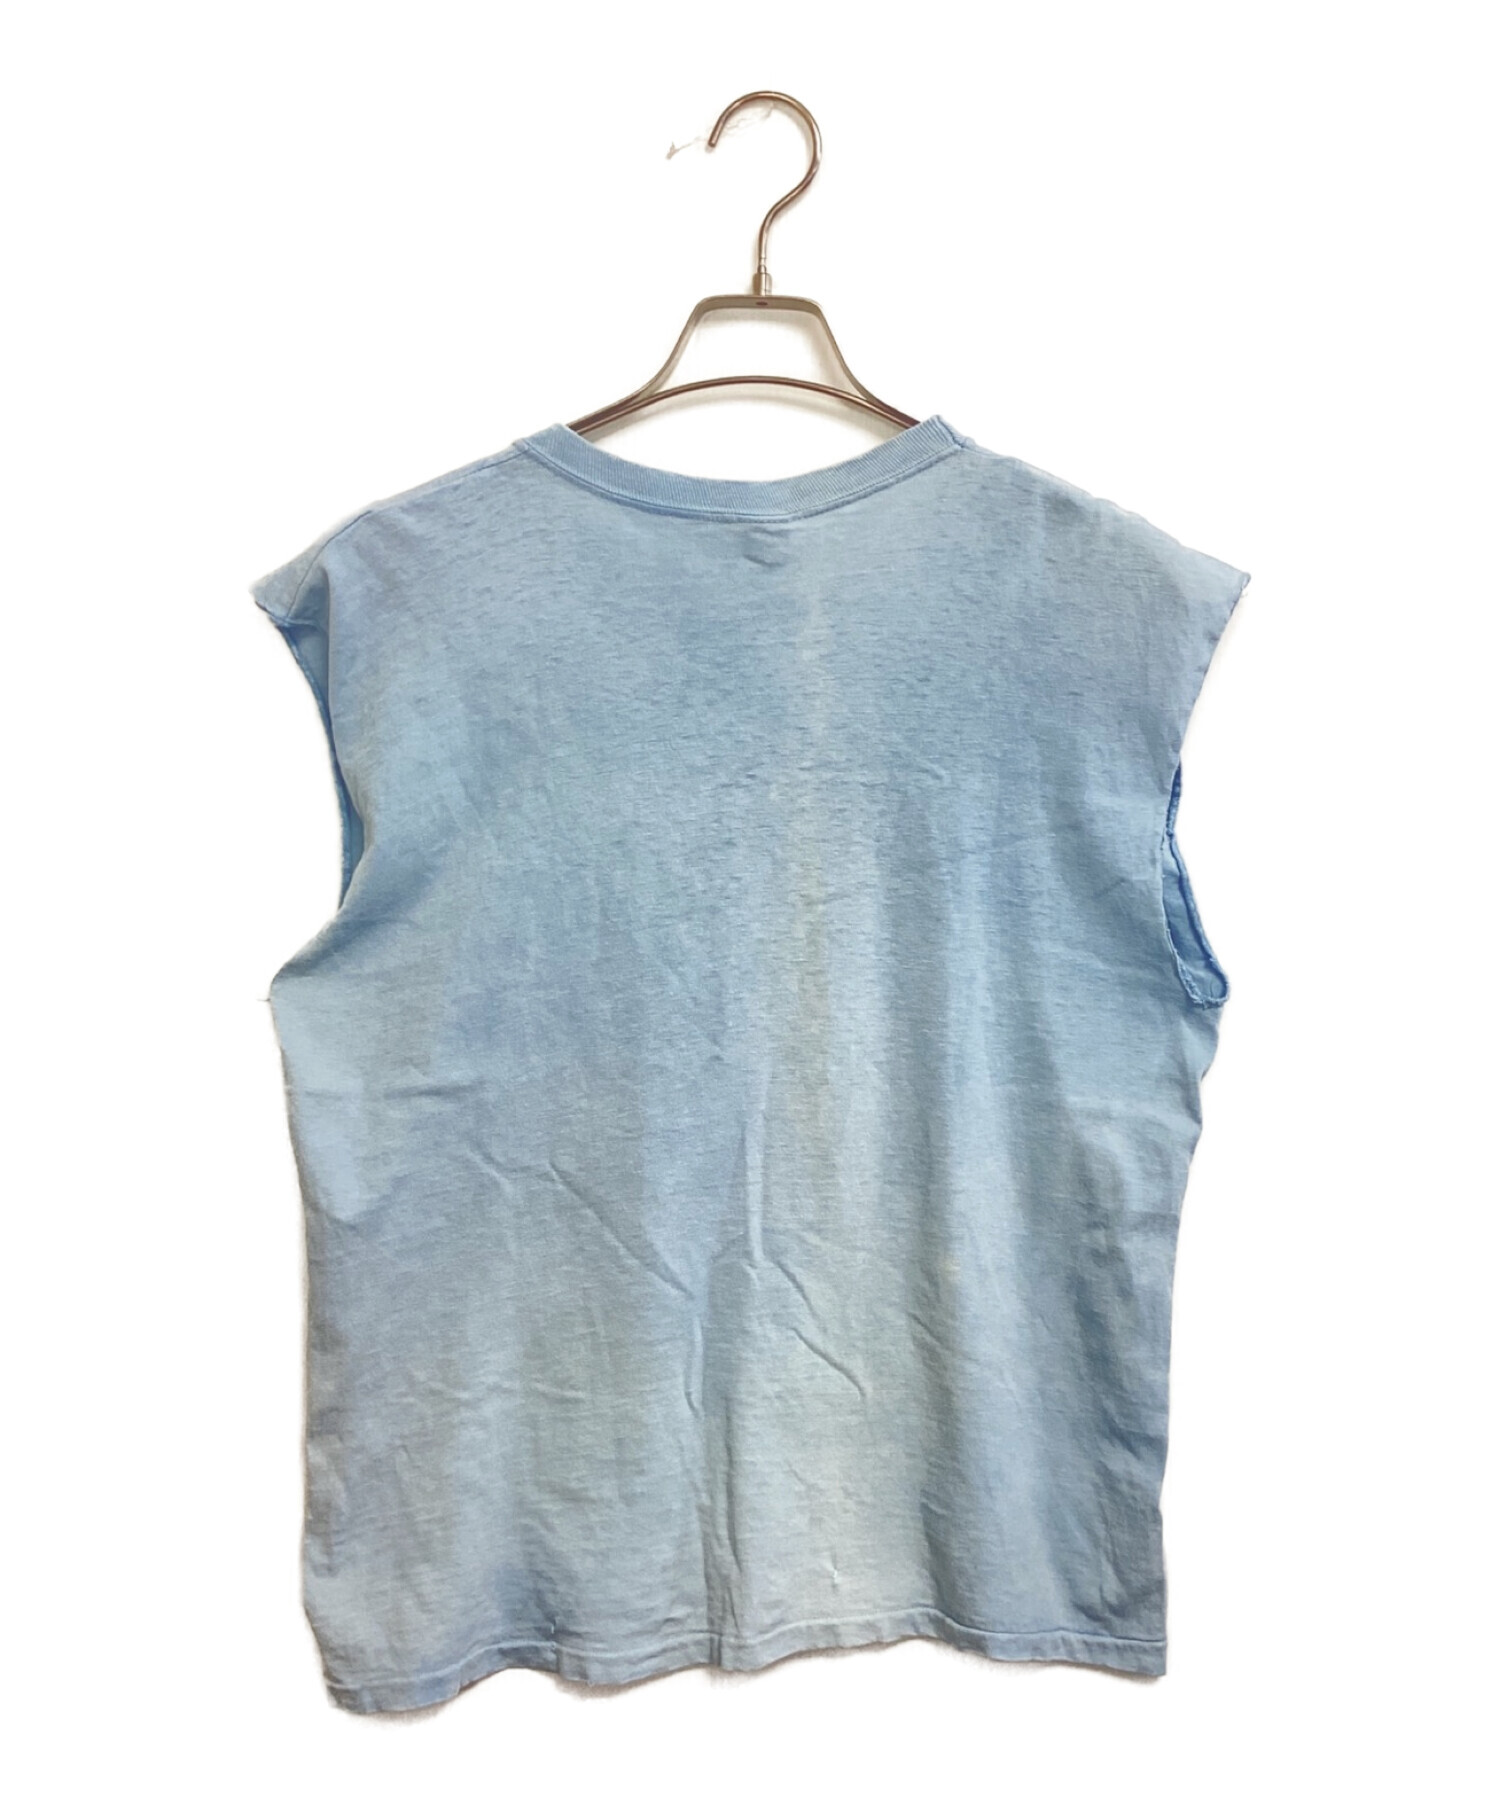 アーティストTシャツ (アーティストTシャツ) [古着]60's ELVIS PRESLEY(エルビスプレスリー) ヴィンテージアーティストTシャツ  ブルー サイズ:42-44